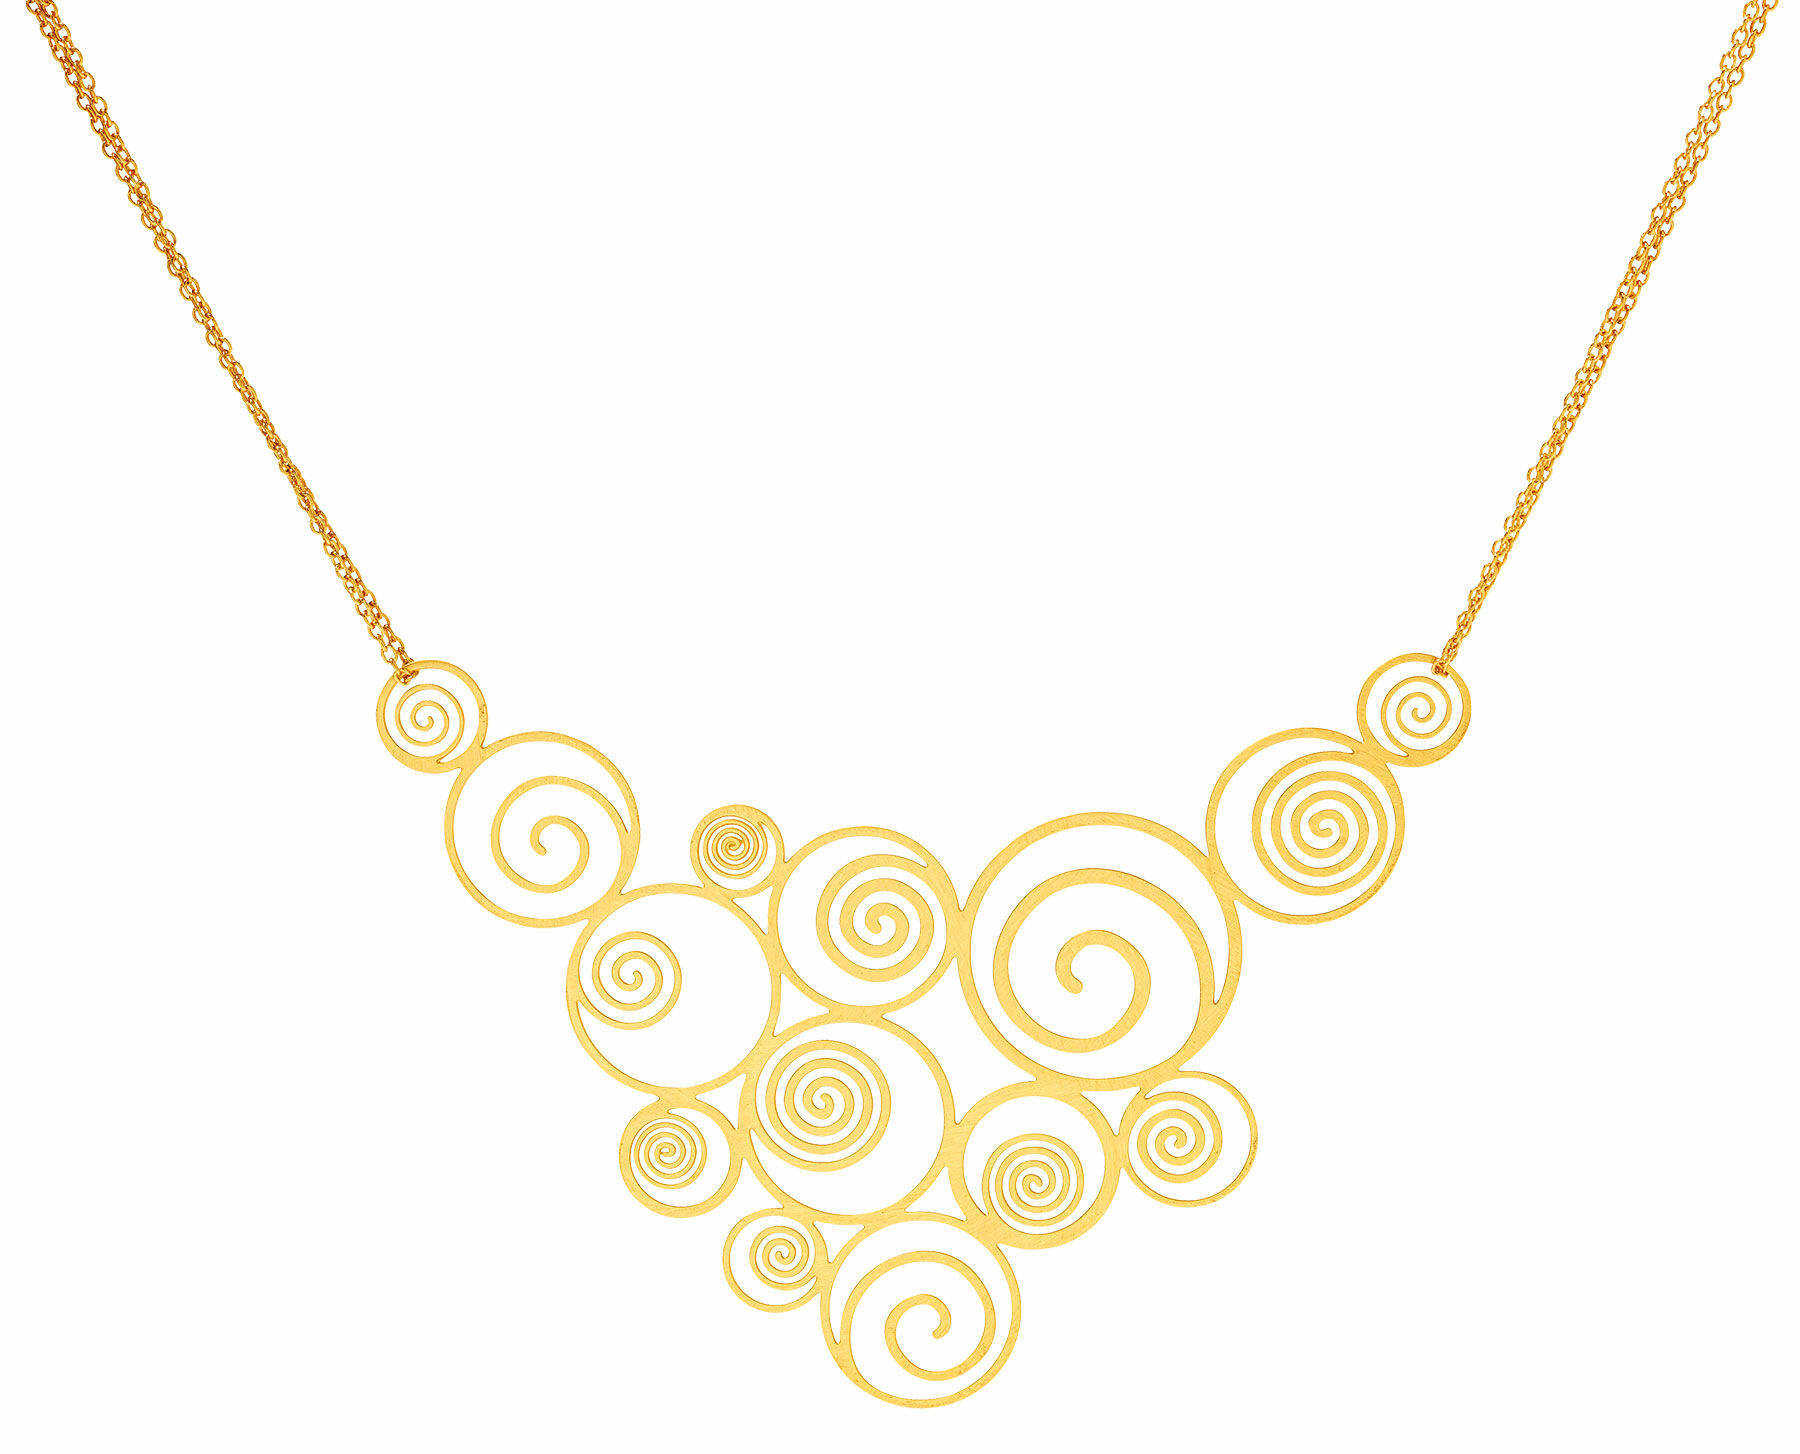 Necklace "Stoclet Frieze" by Gustav Klimt